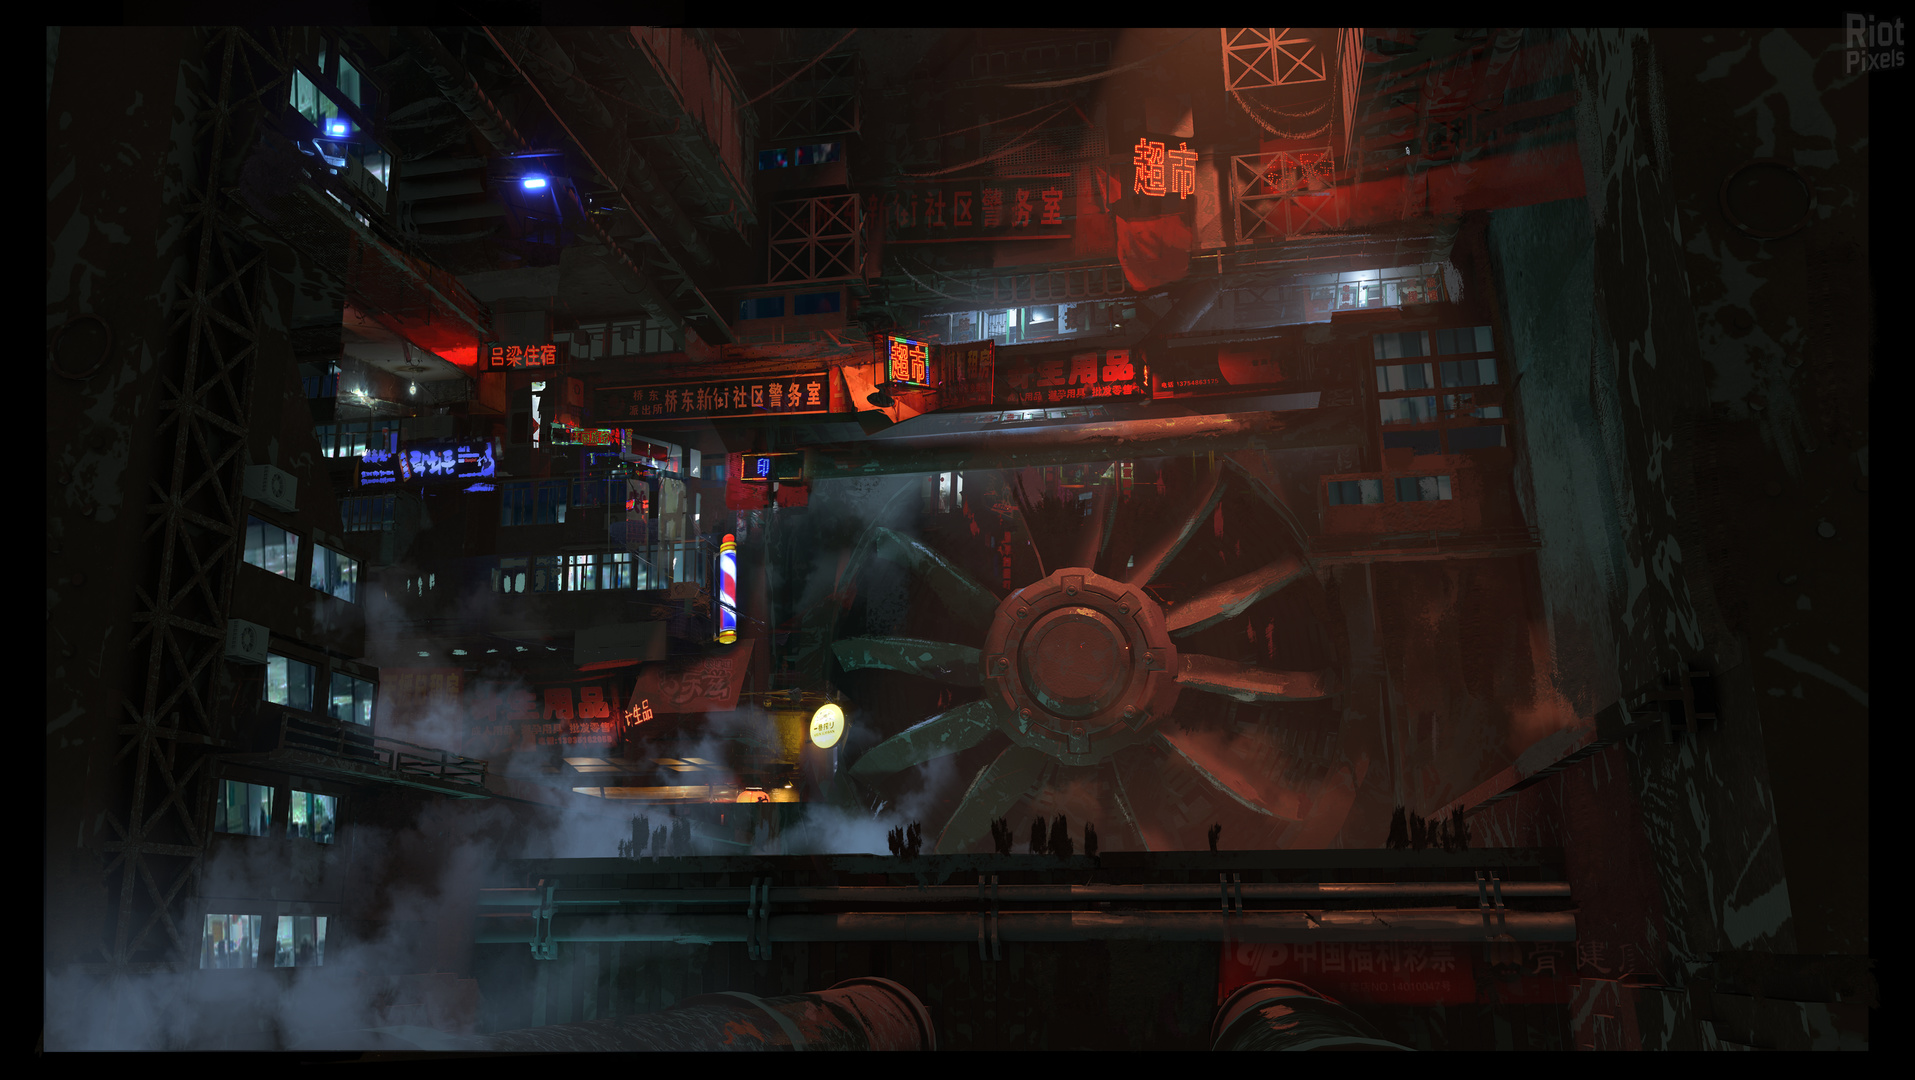 Ghostrunner Video Games Cyberpunk Science Fiction Futuristic Neon Neon Lights Artwork Digital Art 2D 1915x1080